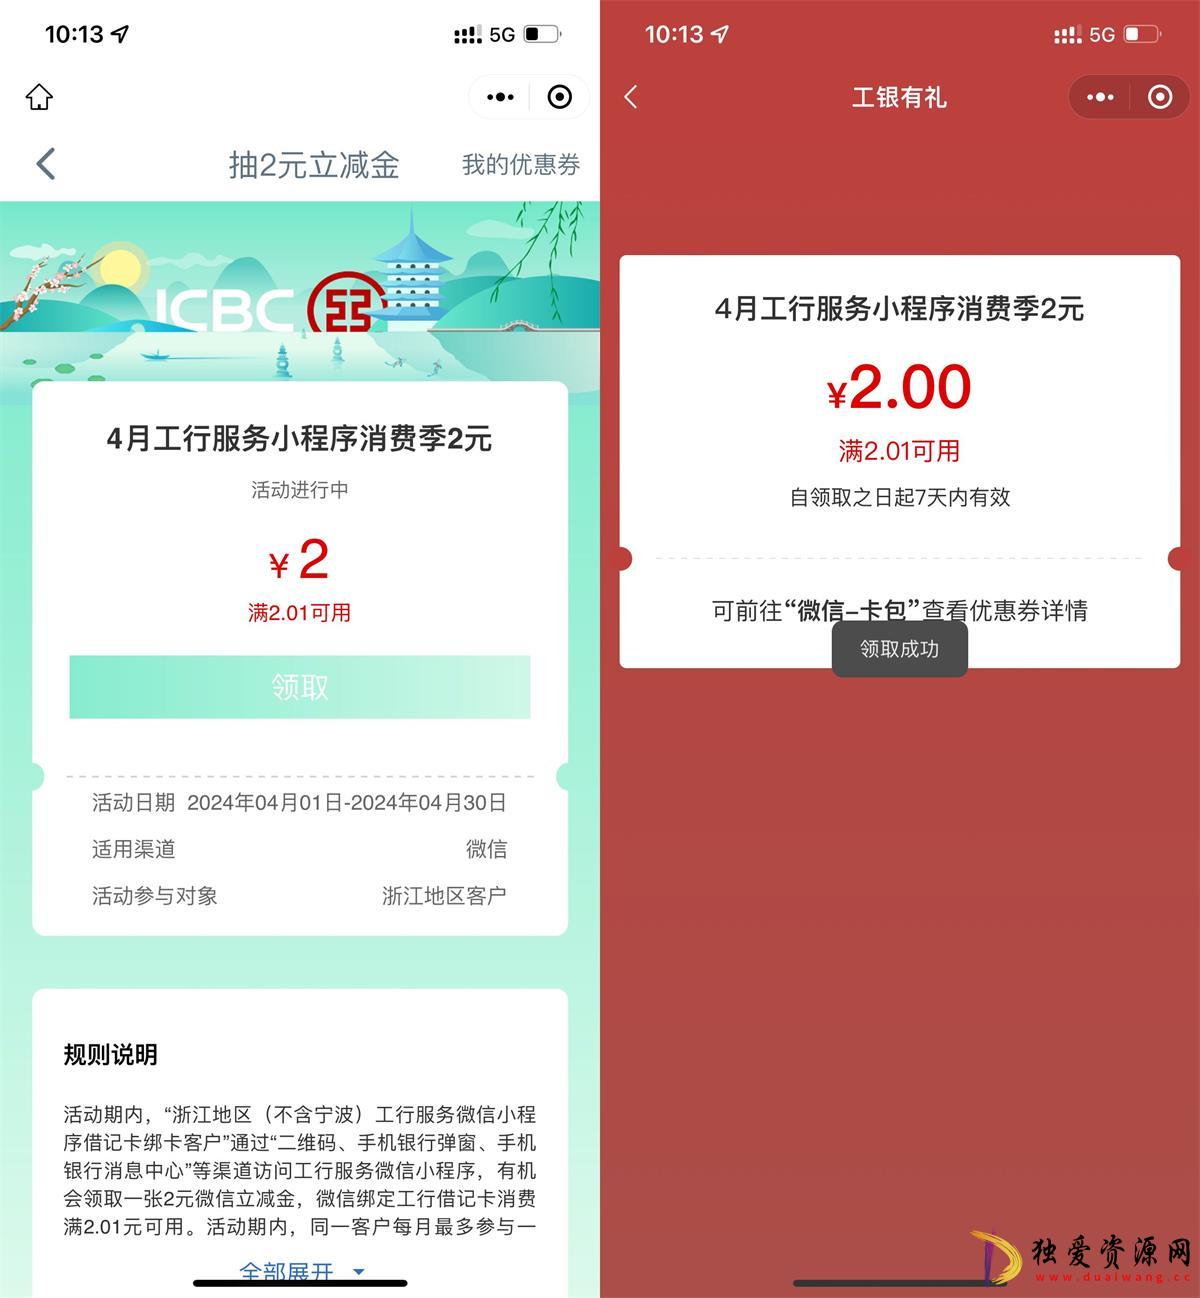 浙江工行用户领2元微信立减金